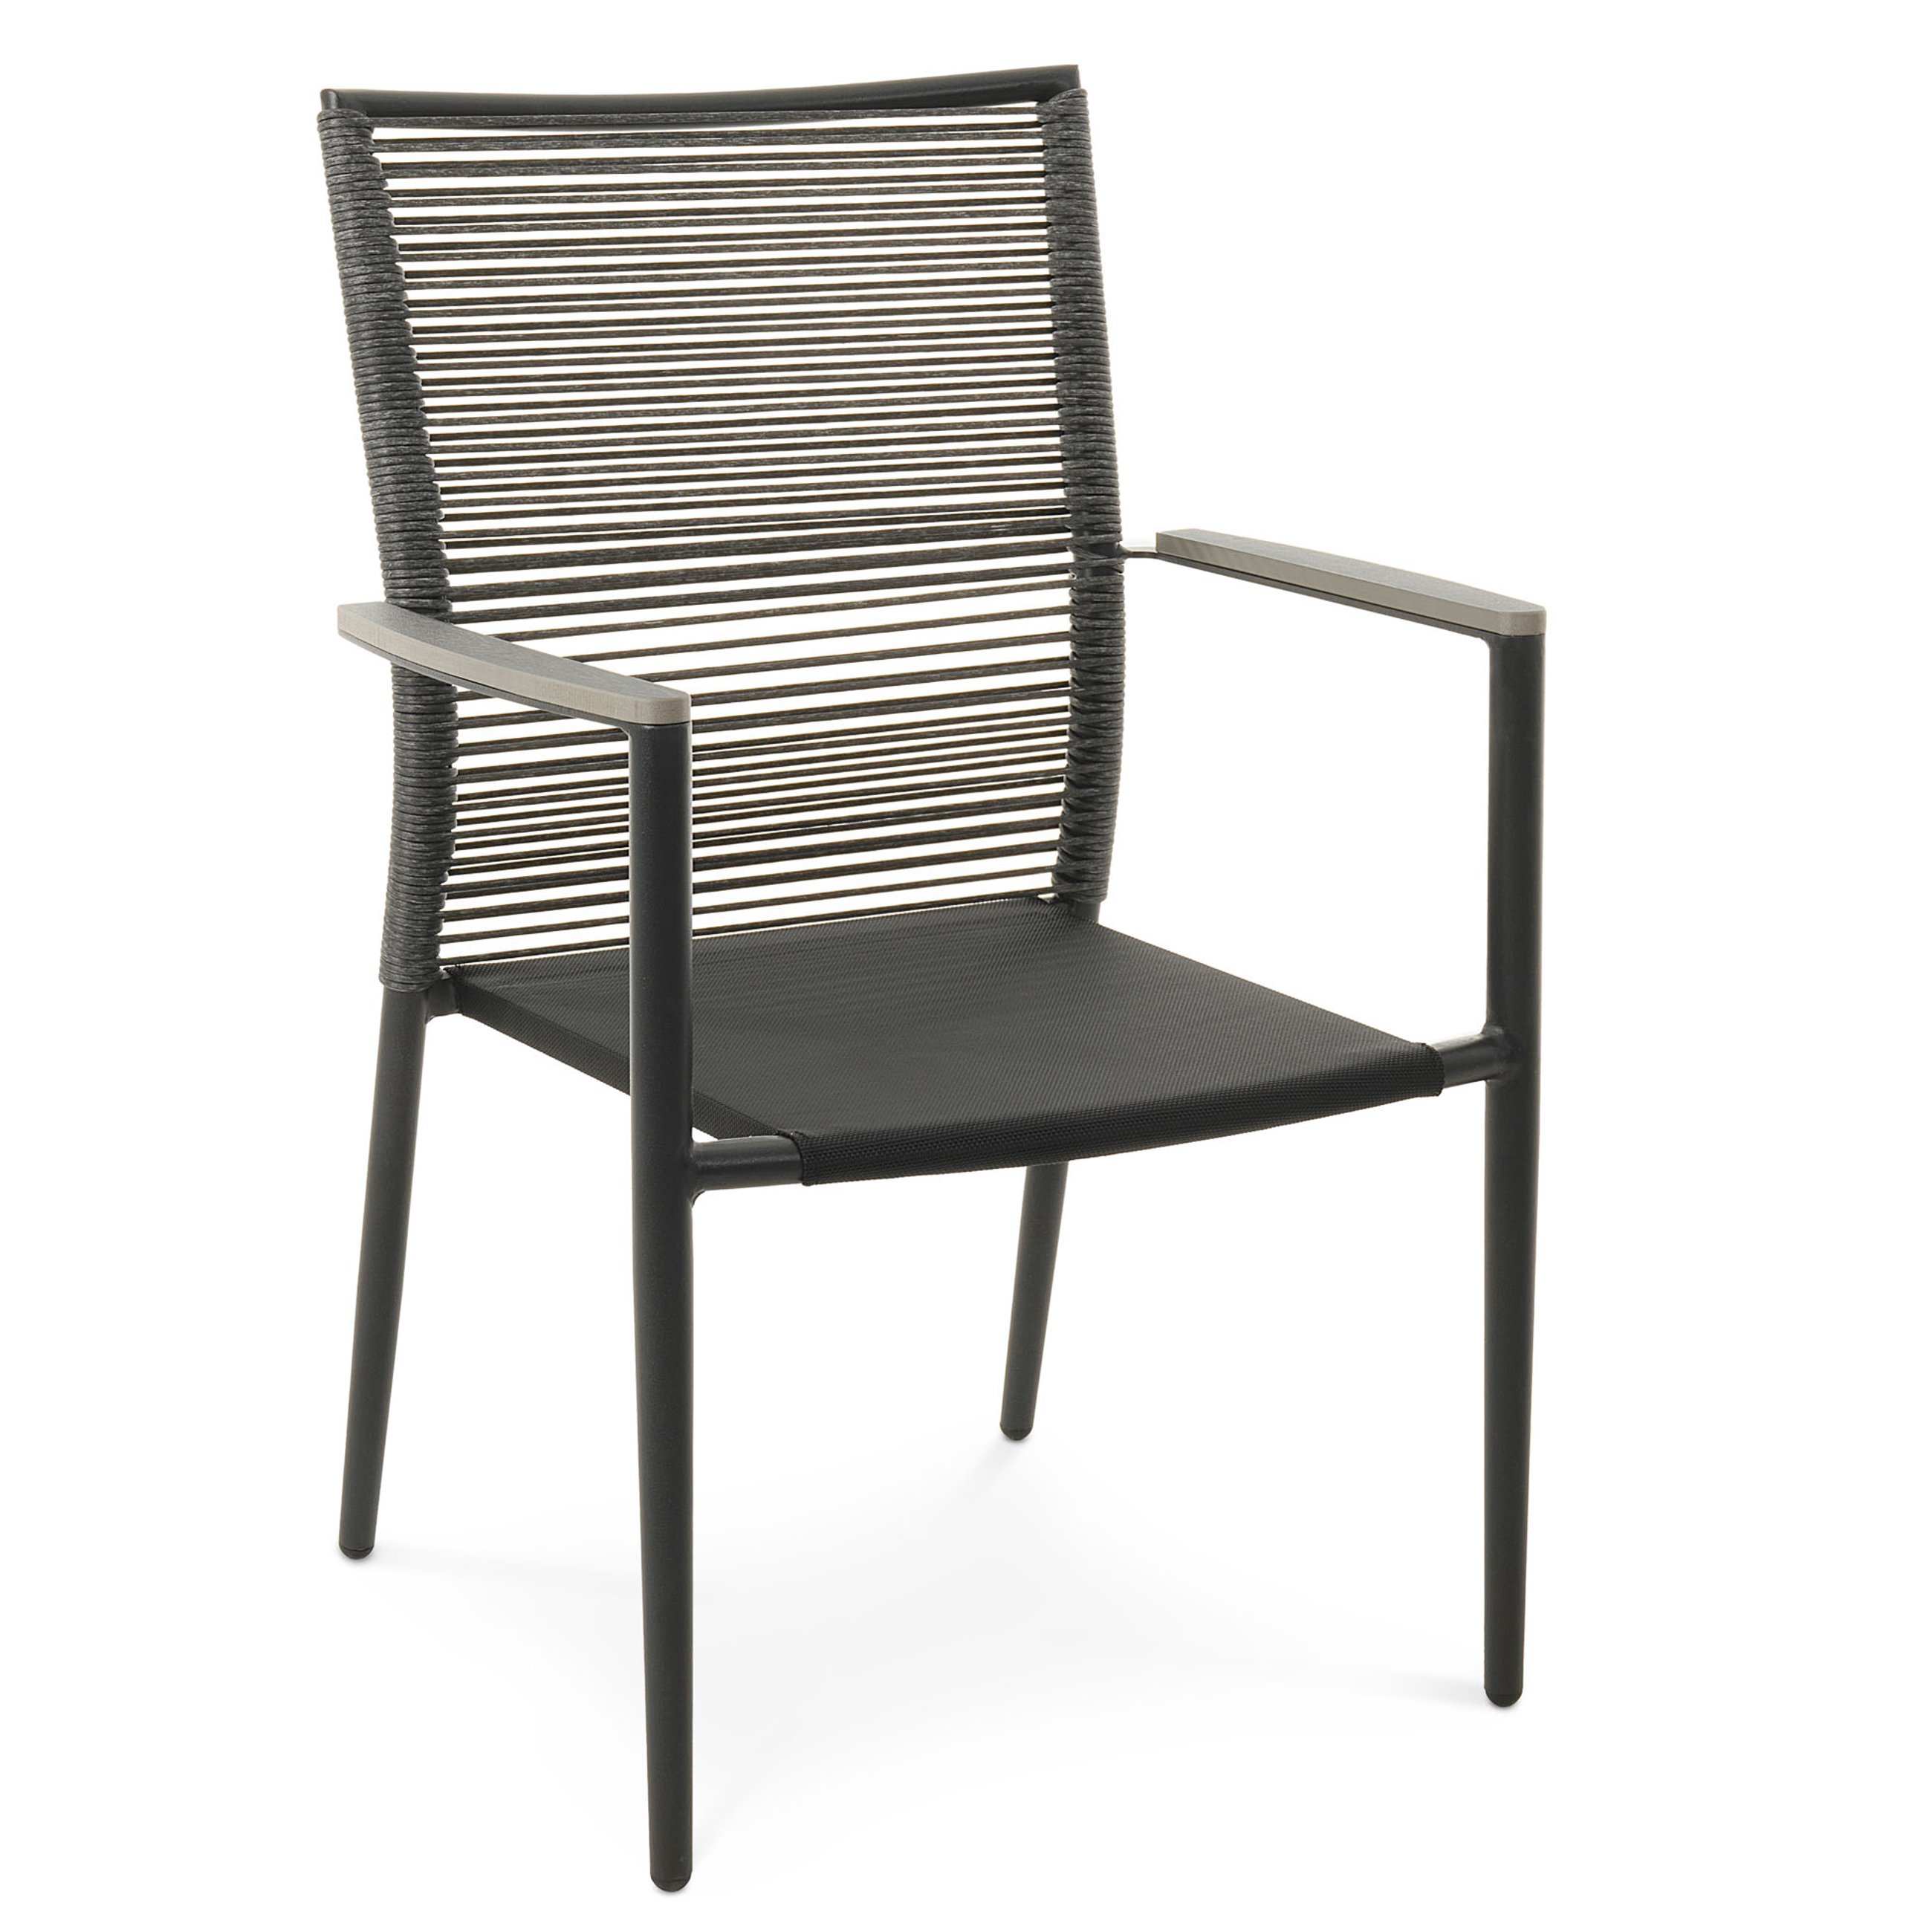 Krzesło ogrodowe Asti marki di volio zostało zaprojektowane z myślą o wygodzie użytkowania